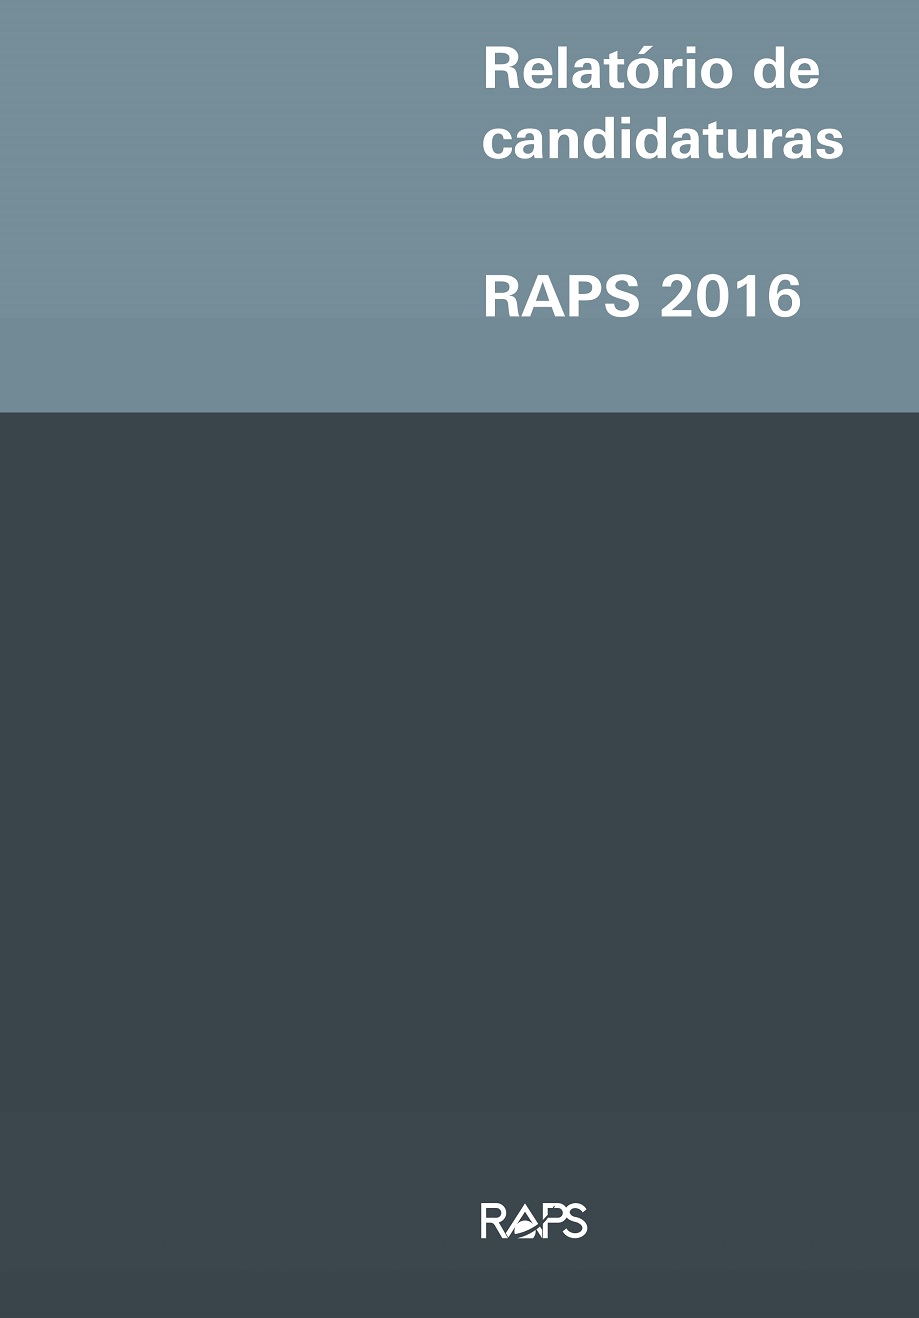 Relatório de candidaturas RAPS 2016